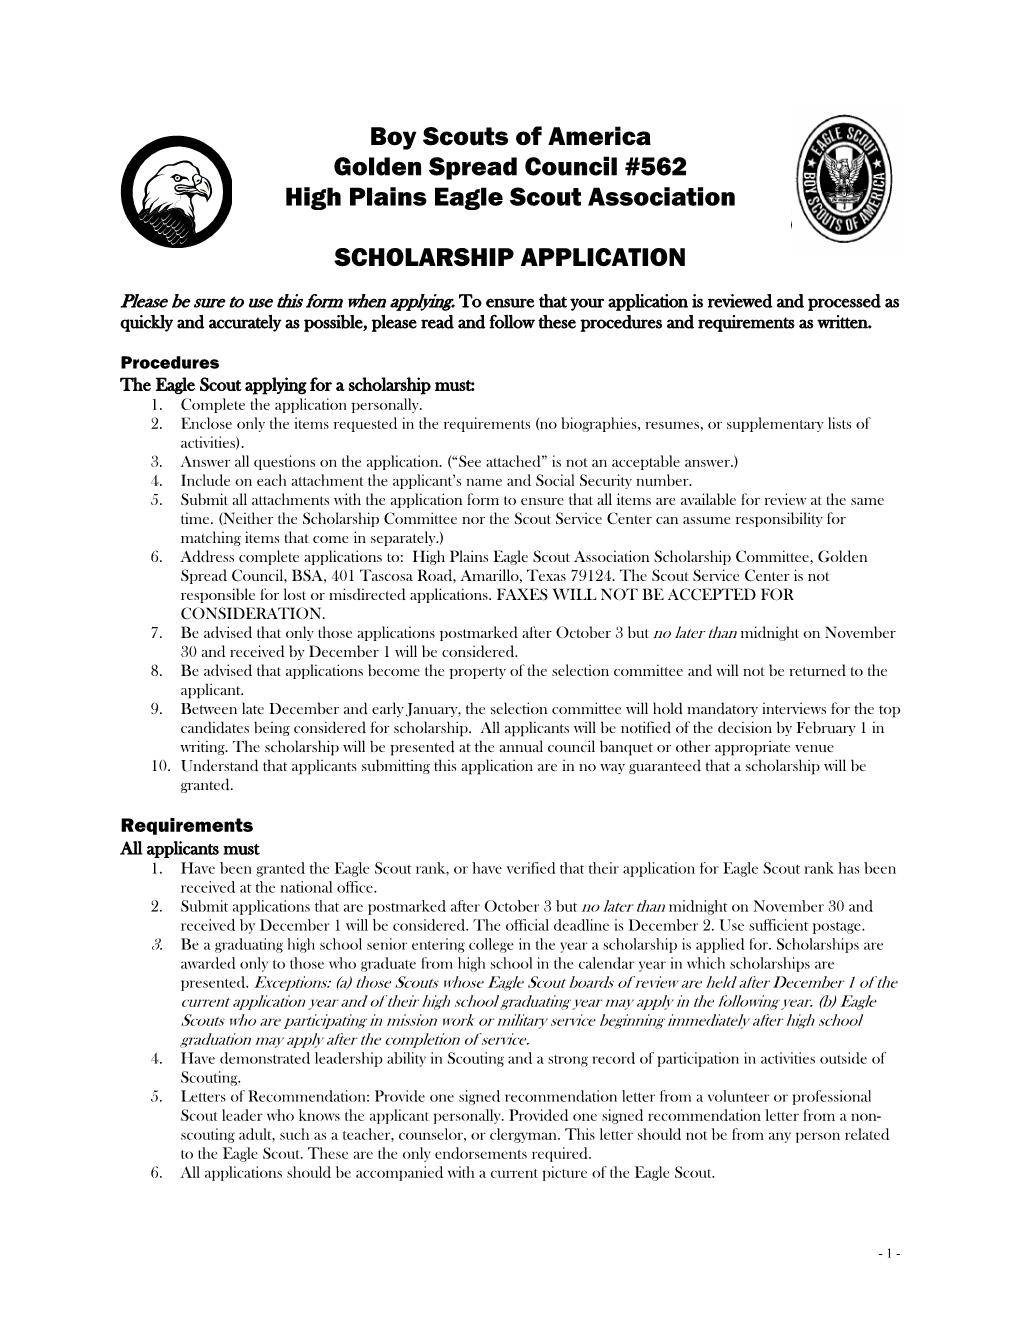 Council Eagle Scout Scholarship Form